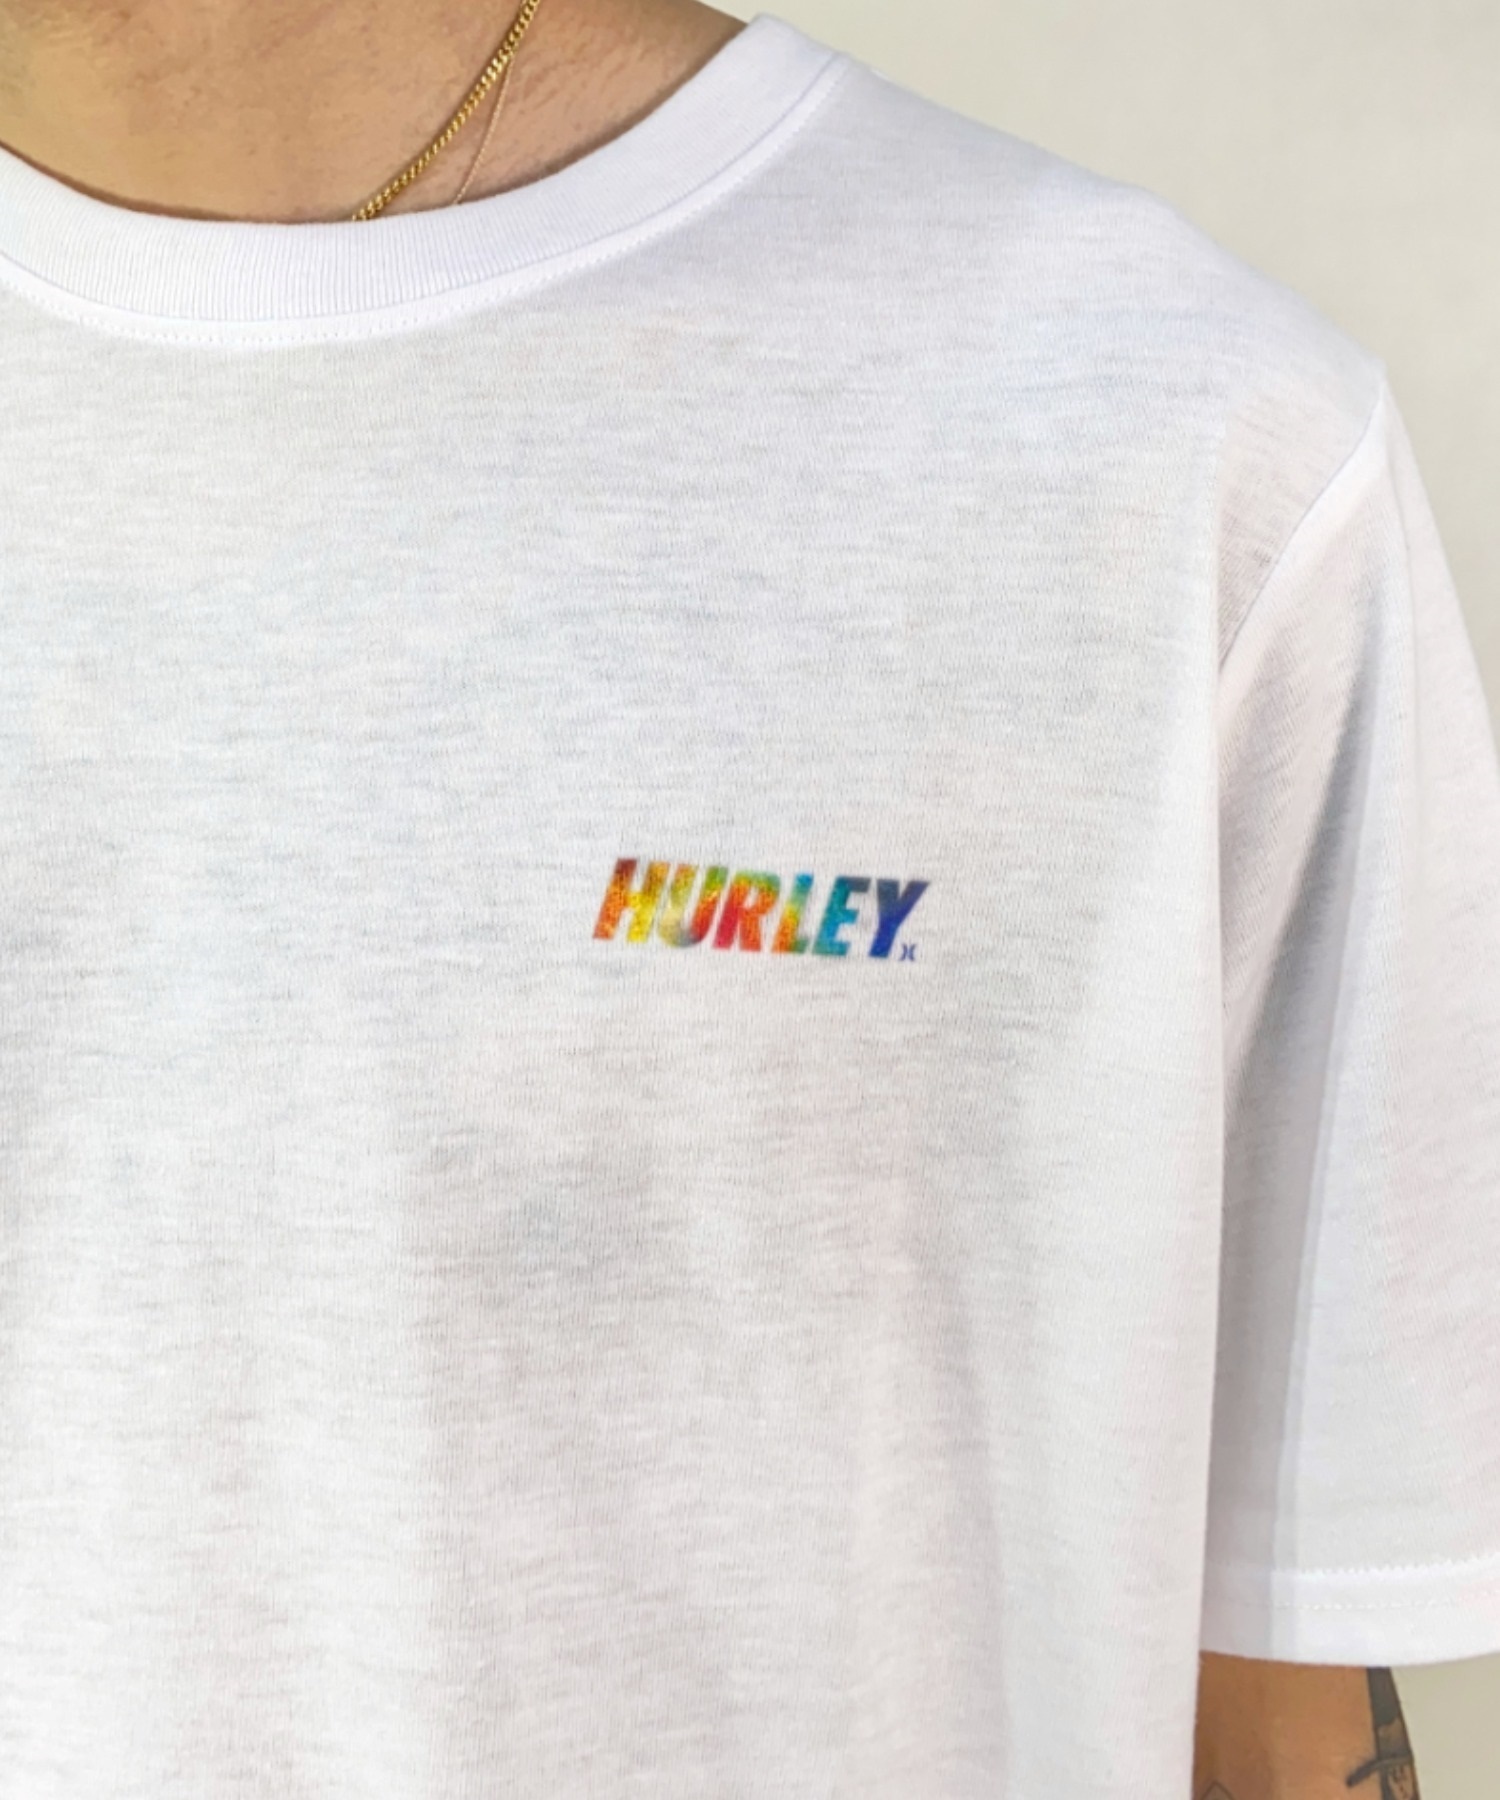 Hurley ハーレー MSS2200053 メンズ 半袖 Tシャツ ルーズシルエット スクエアロゴ バックプリントTシャツ ムラサキスポーツ限定(WHT-S)